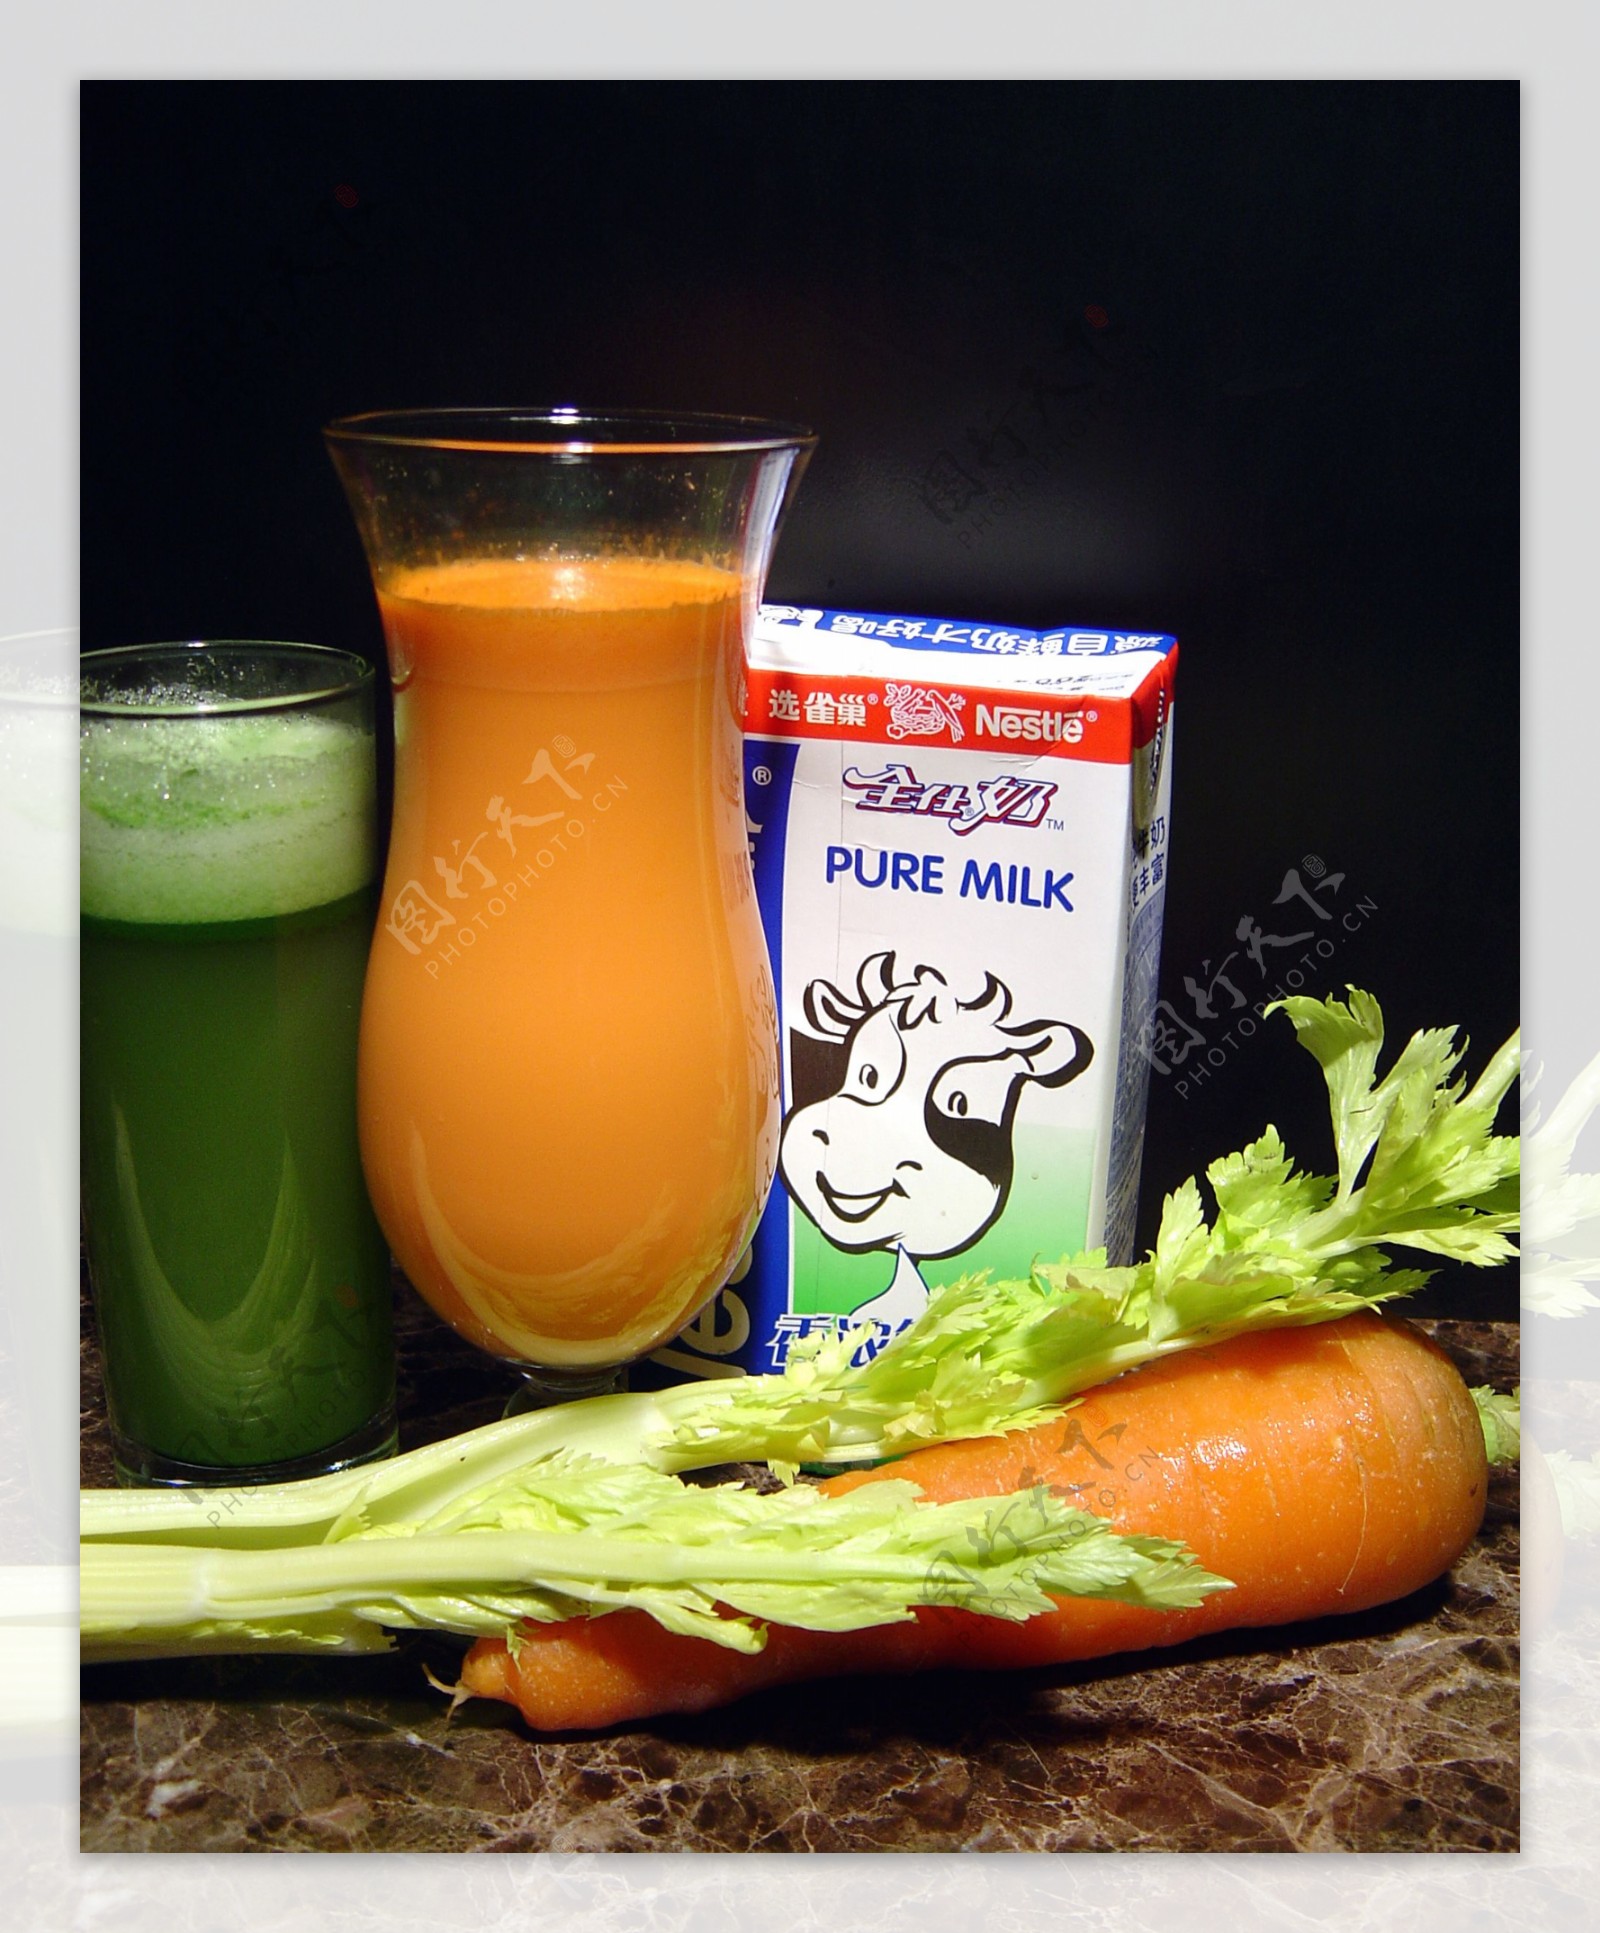 Carrots Detox Juice Recipe